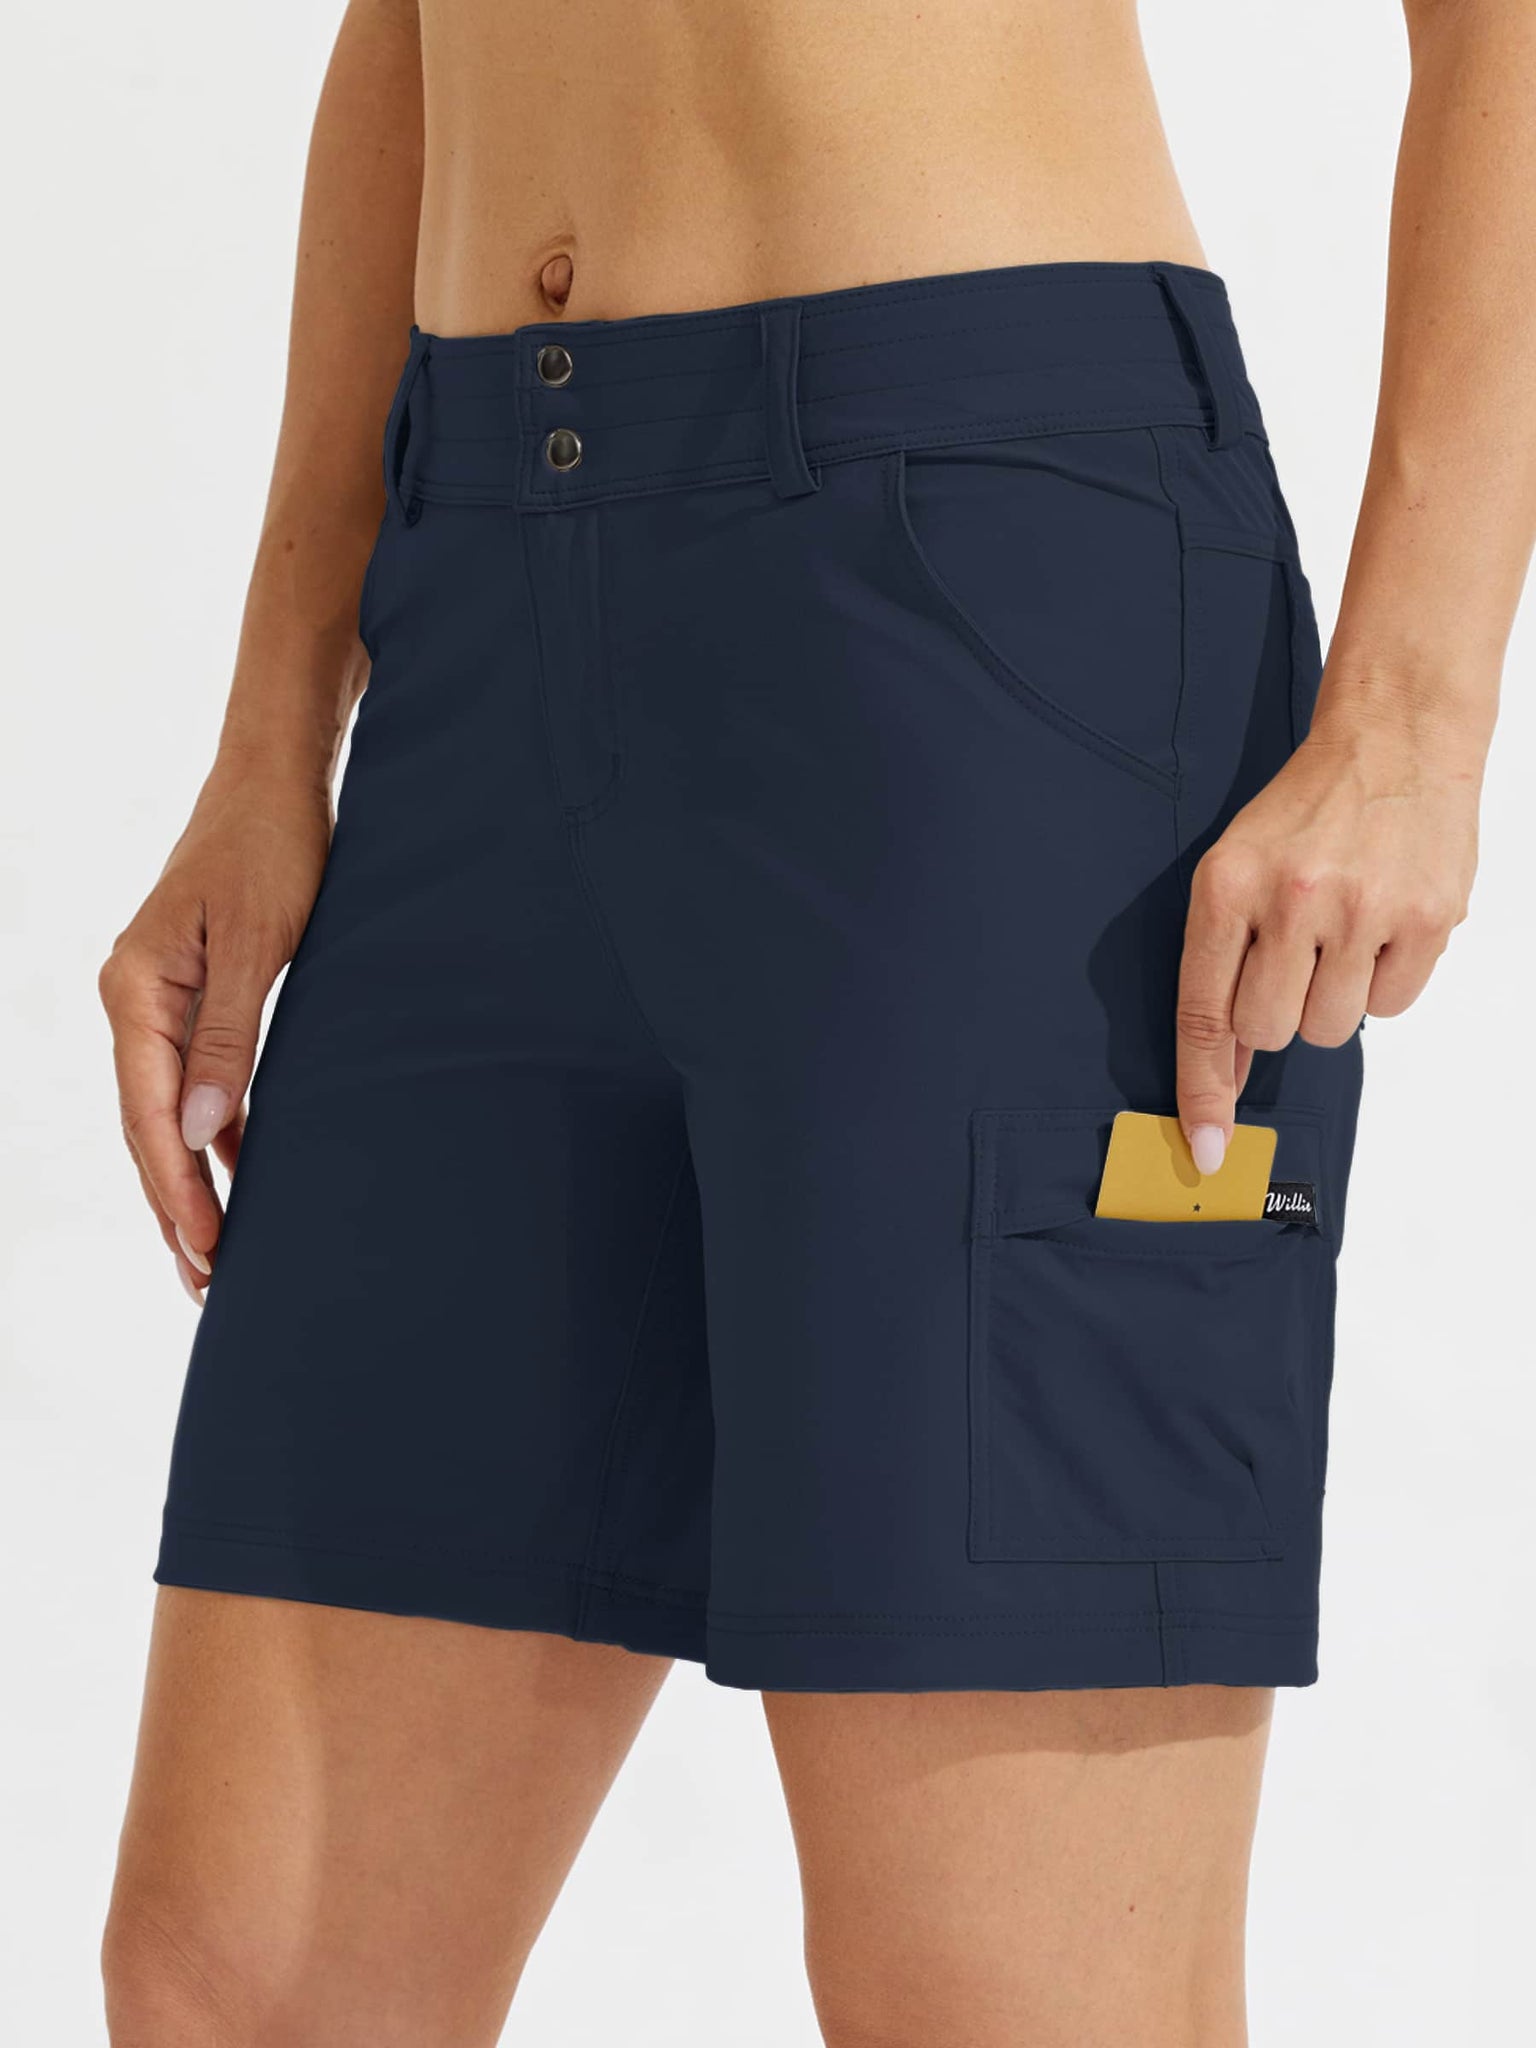 Women's Outdoor Pro Shorts Blue_model3